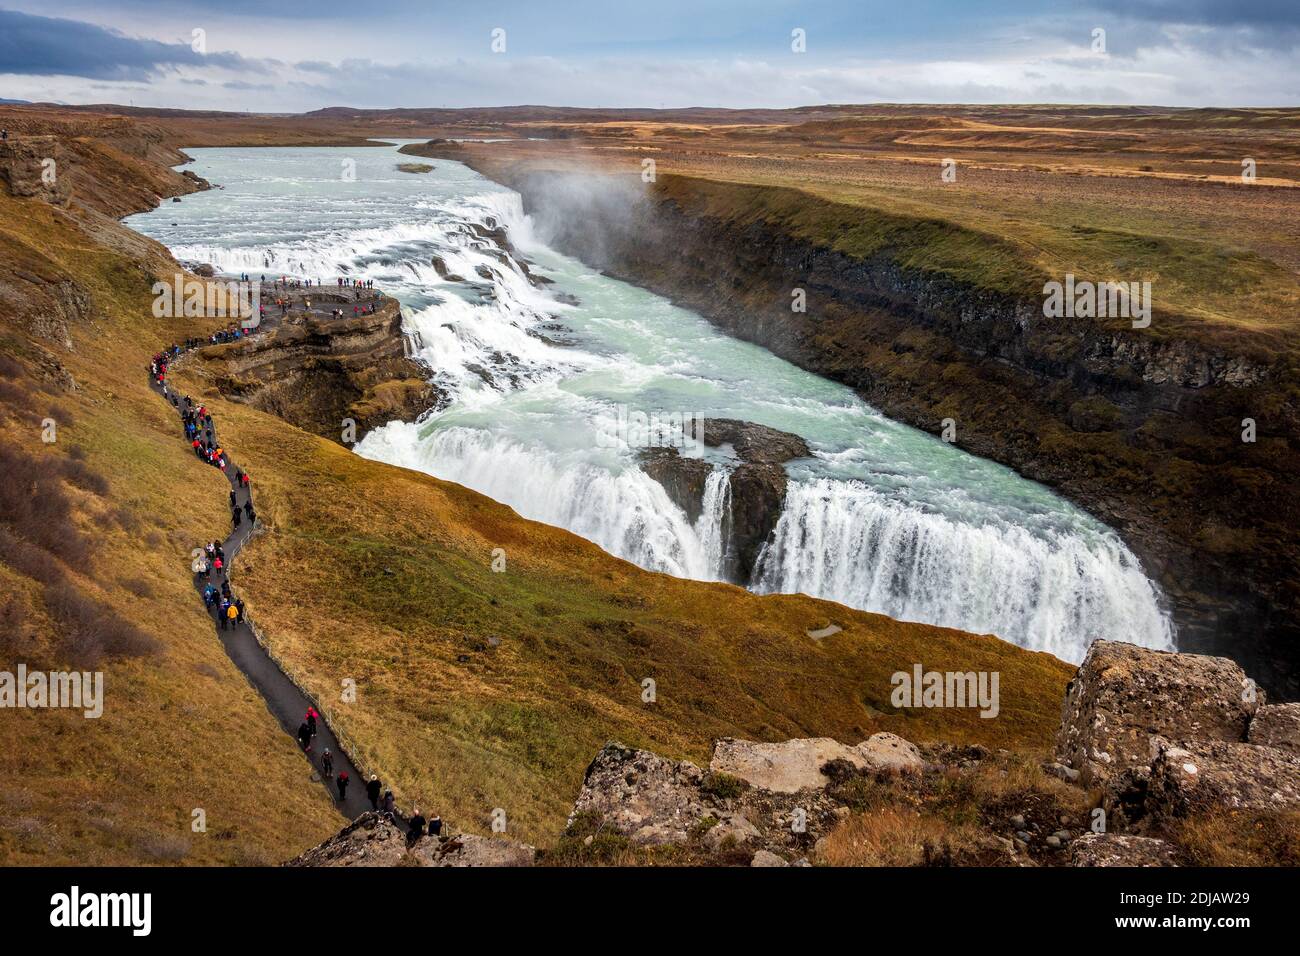 Chute d'eau de Gullfoss partie de la visite du cercle d'or en Islande Banque D'Images